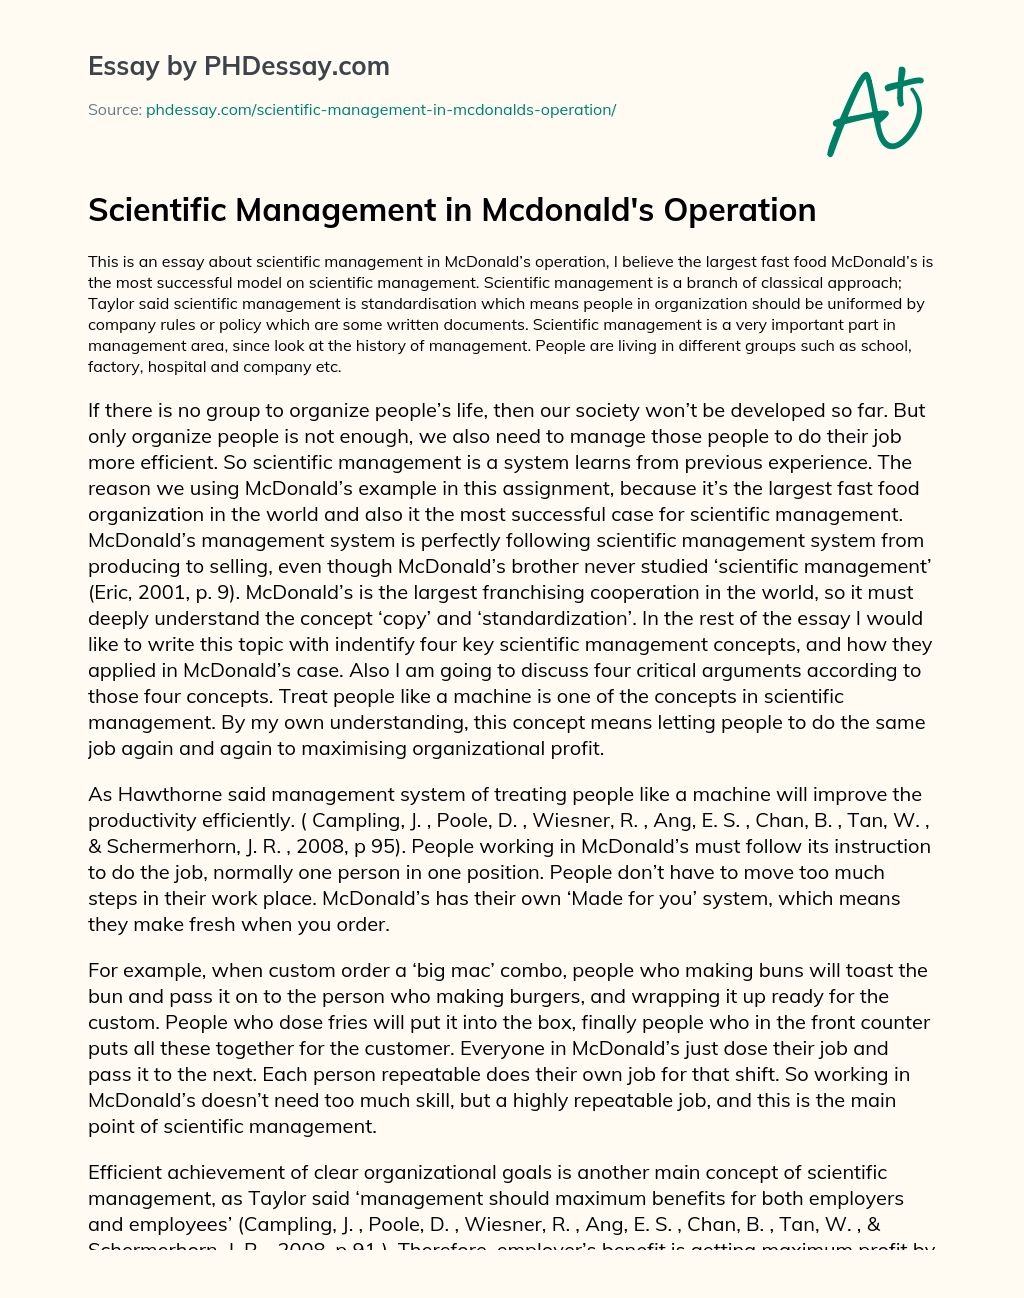 Scientific Management in Mcdonald’s Operation essay